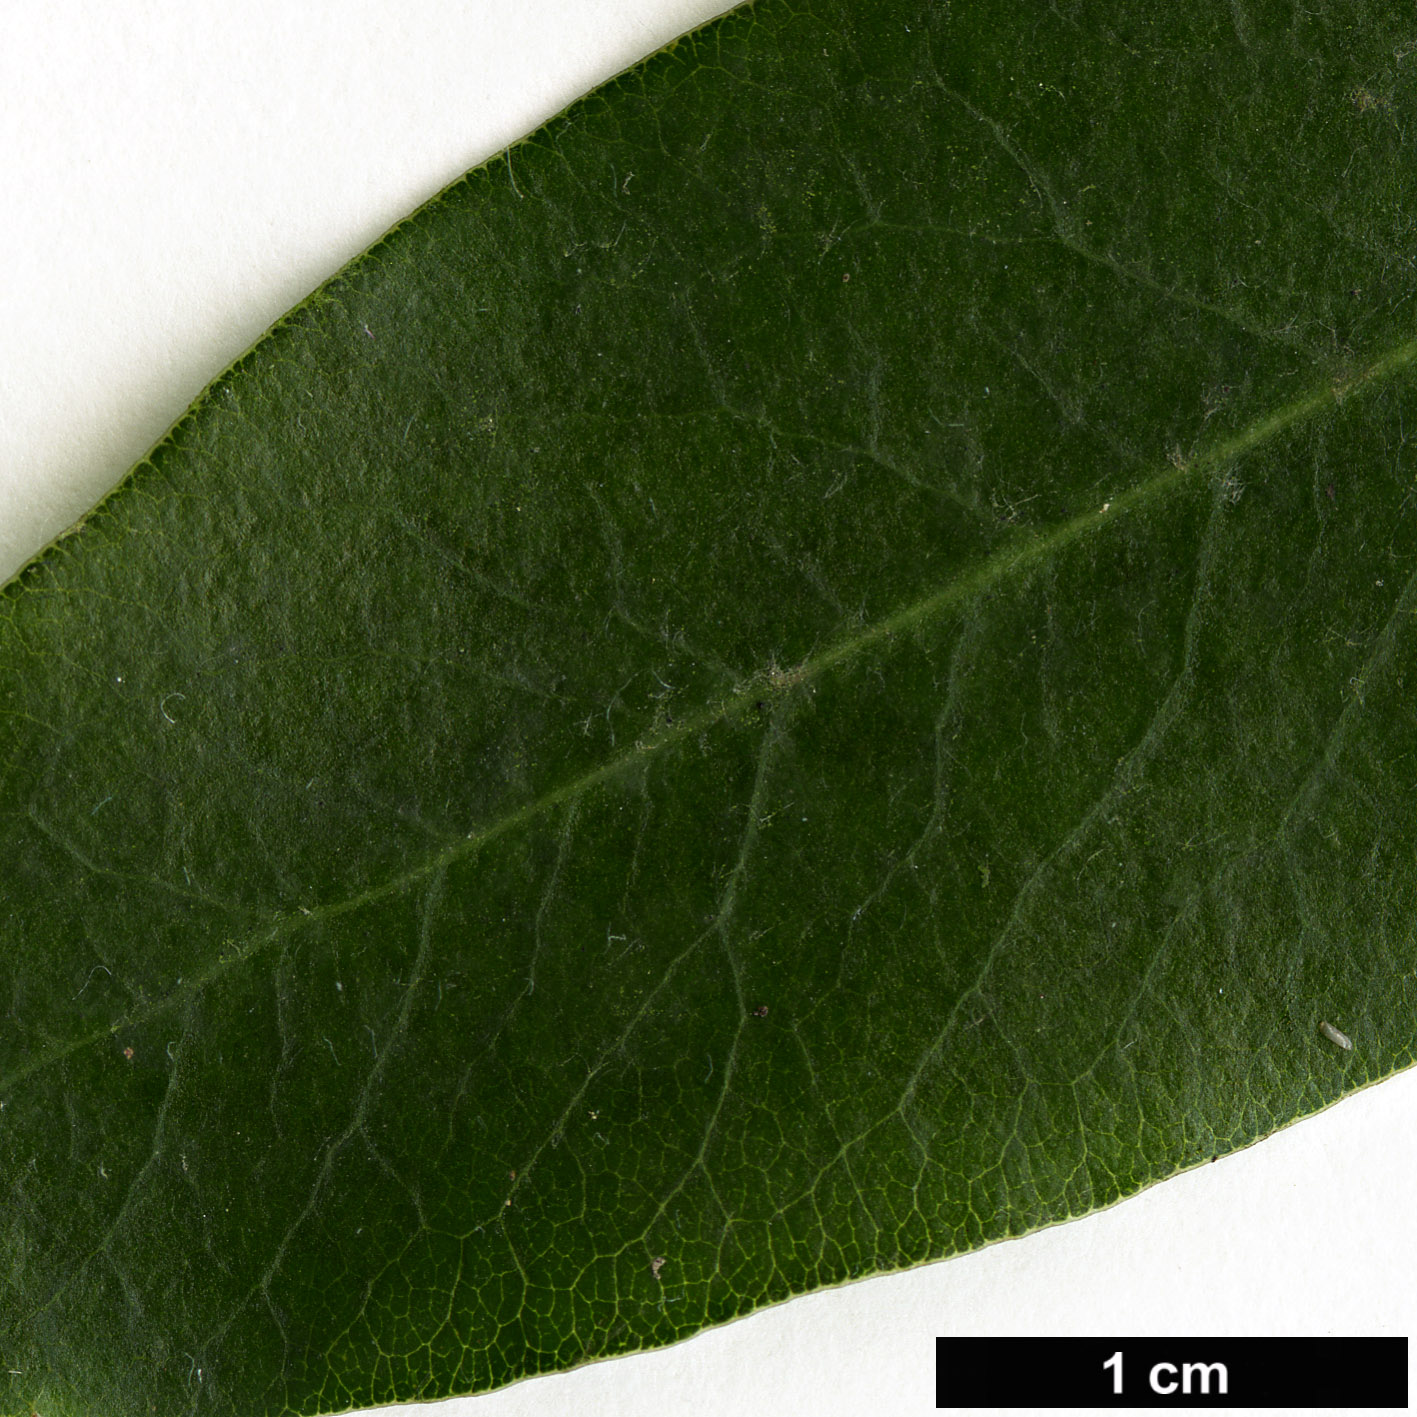 High resolution image: Family: Pittosporaceae - Genus: Pittosporum - Taxon: buchananii